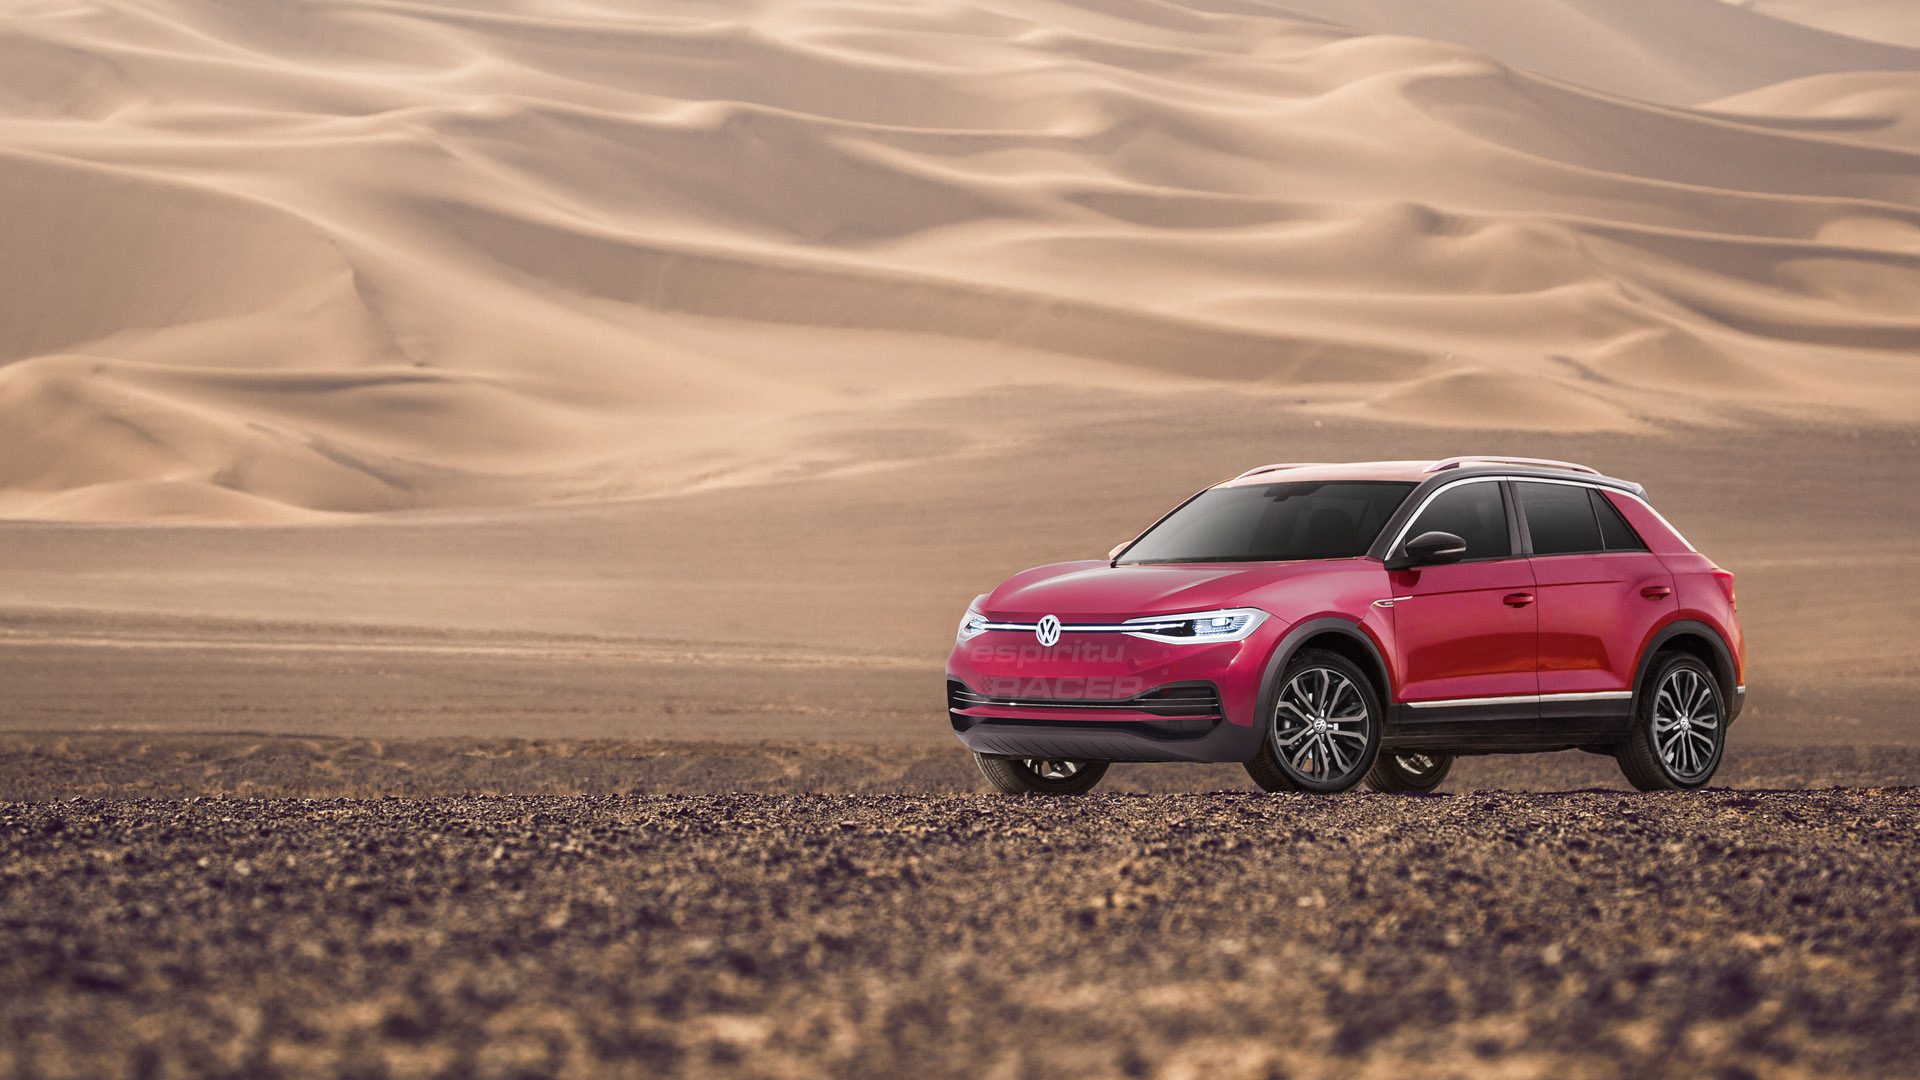 Volkswagen planea un SUV eléctrico de acceso